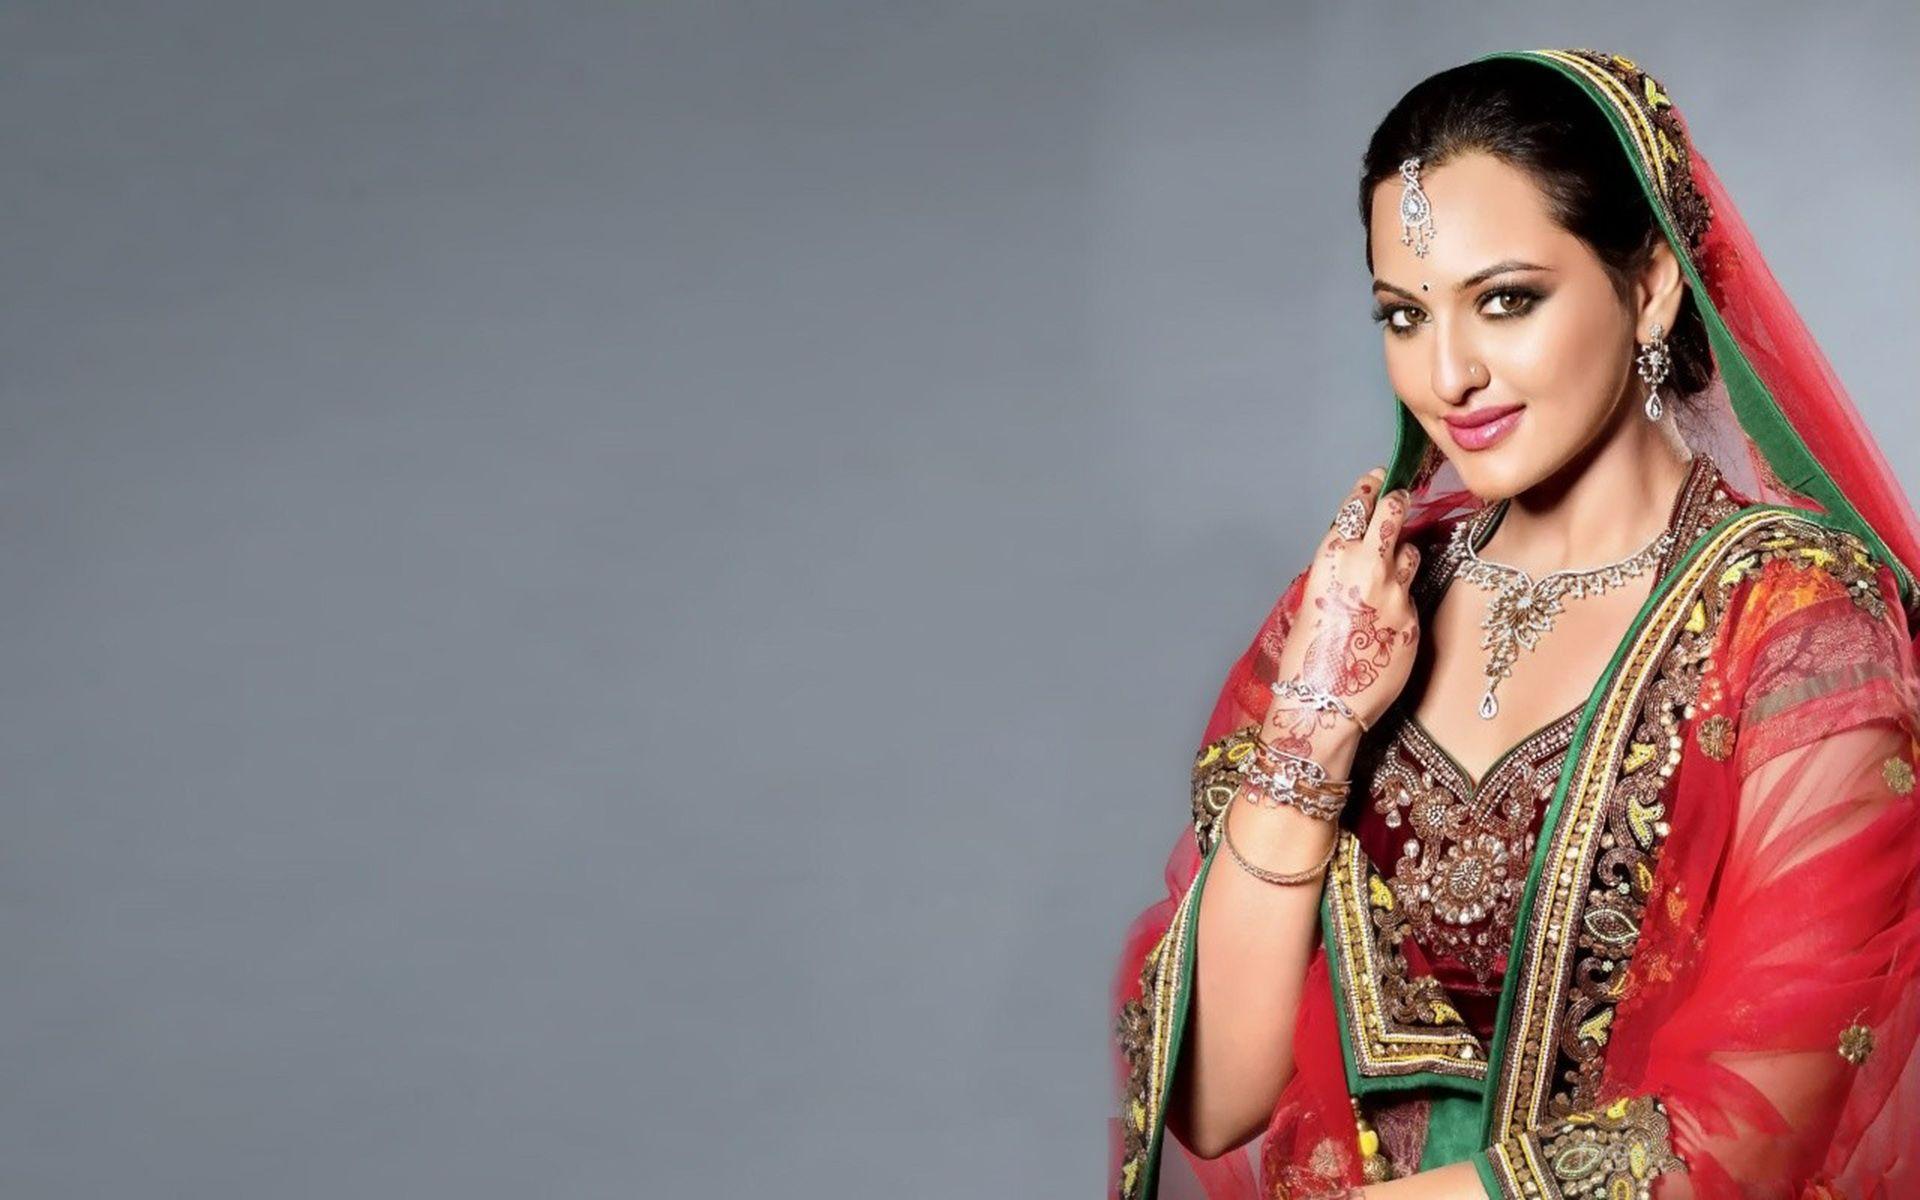 Bollywood Actress Pics For Desktop